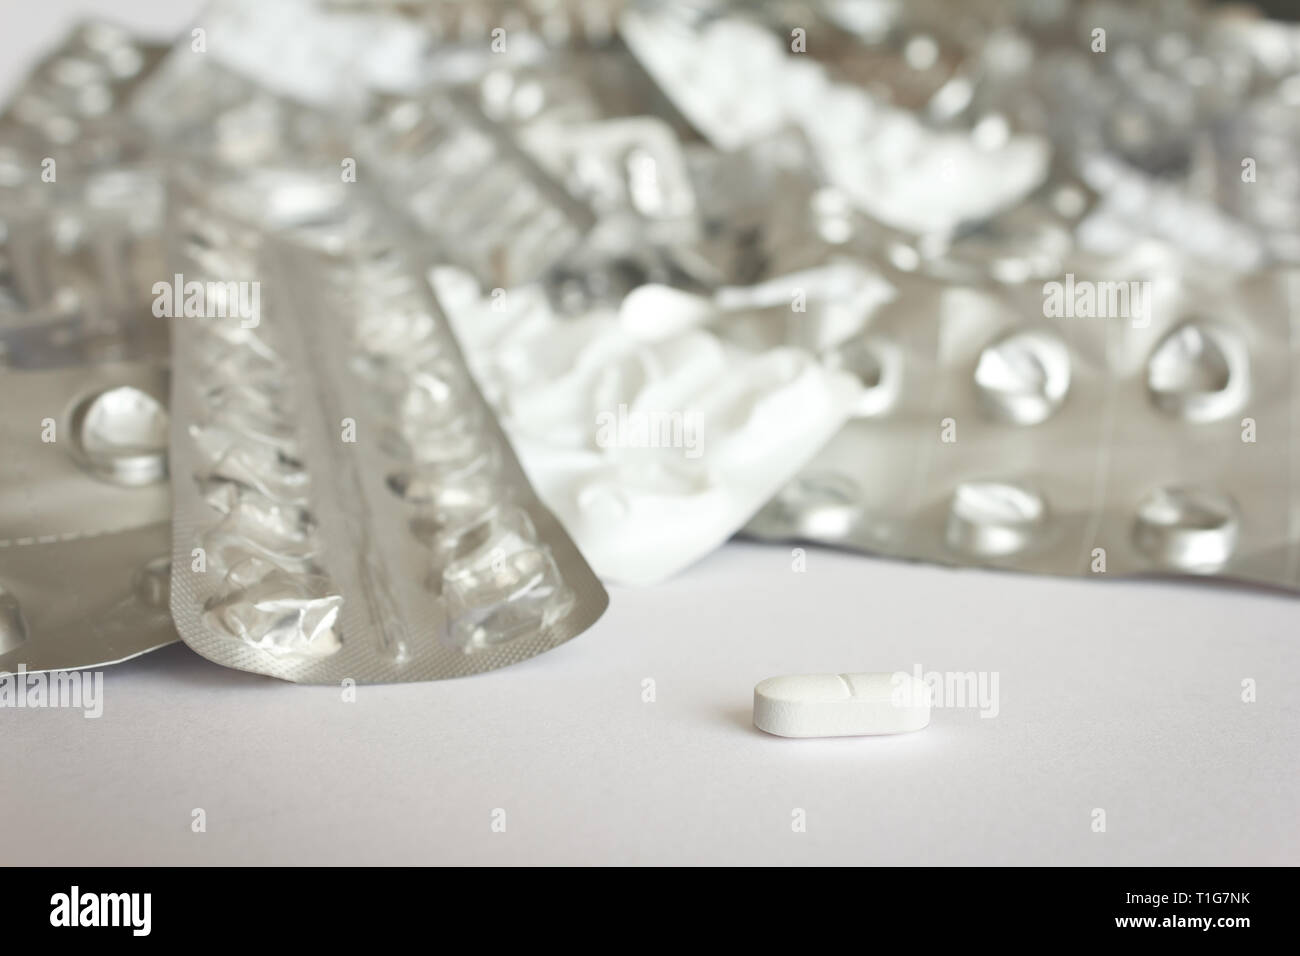 Eine einzige Tablette vor vielen leeren blister Pakete auf weißem Hintergrund, Drogenmissbrauch Konzept. Stockfoto